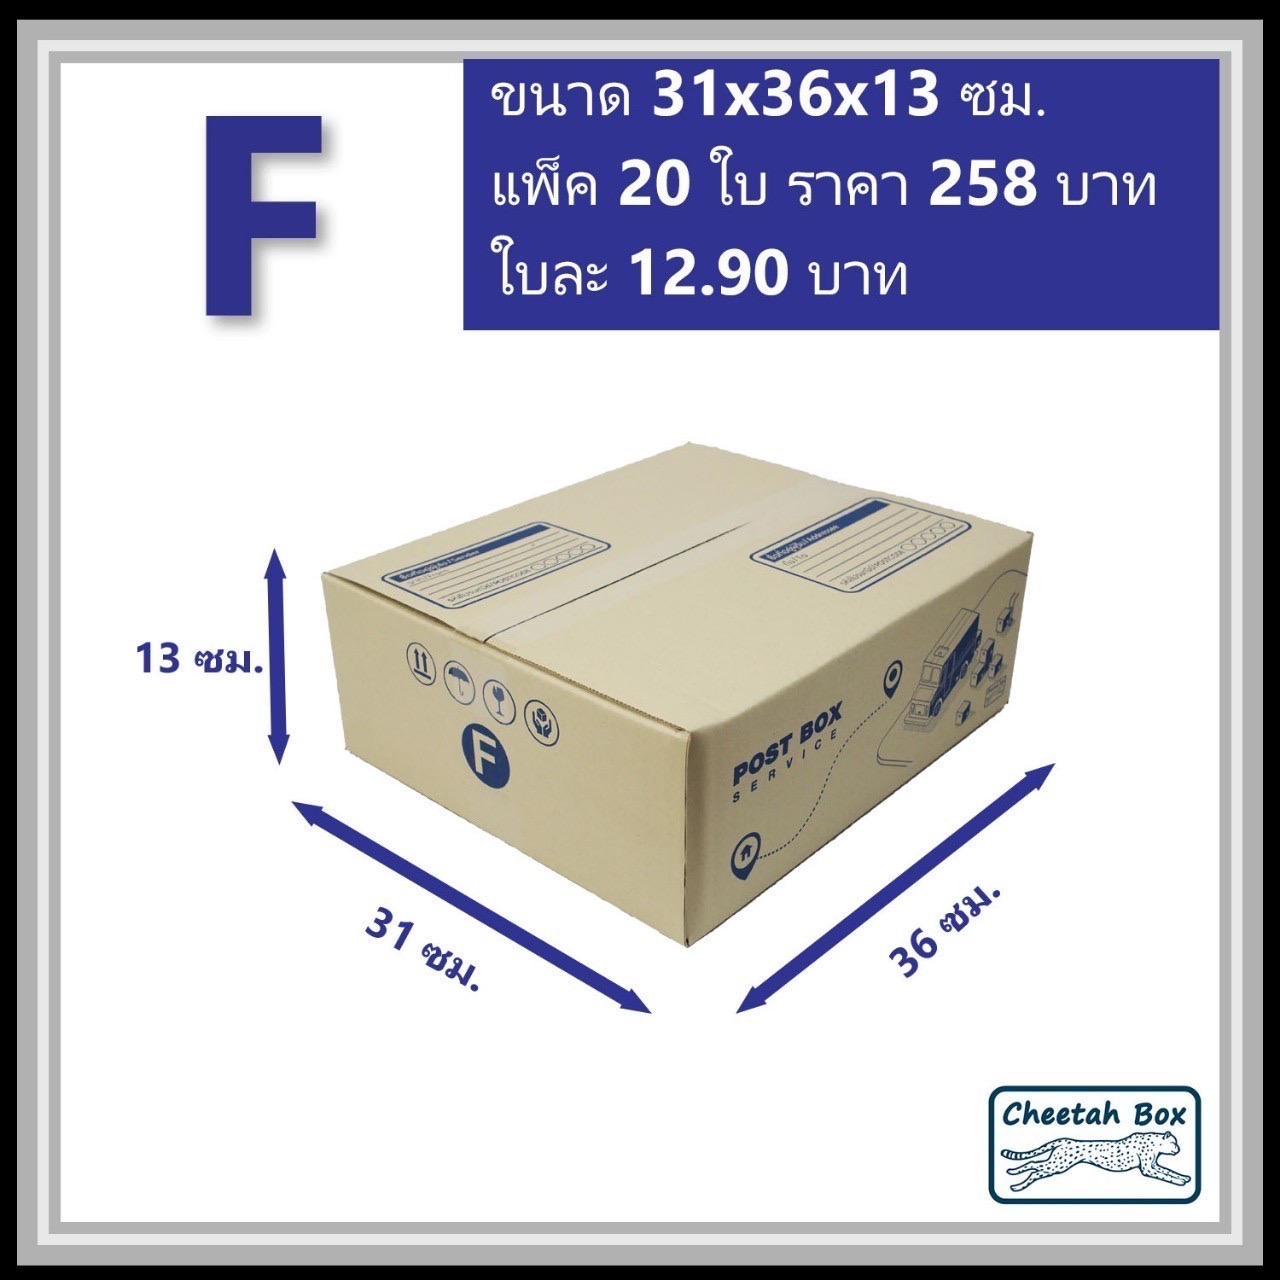 กล่องไปรษณีย์ F (Cheetah Box ขนาด 31*36*13 CM)